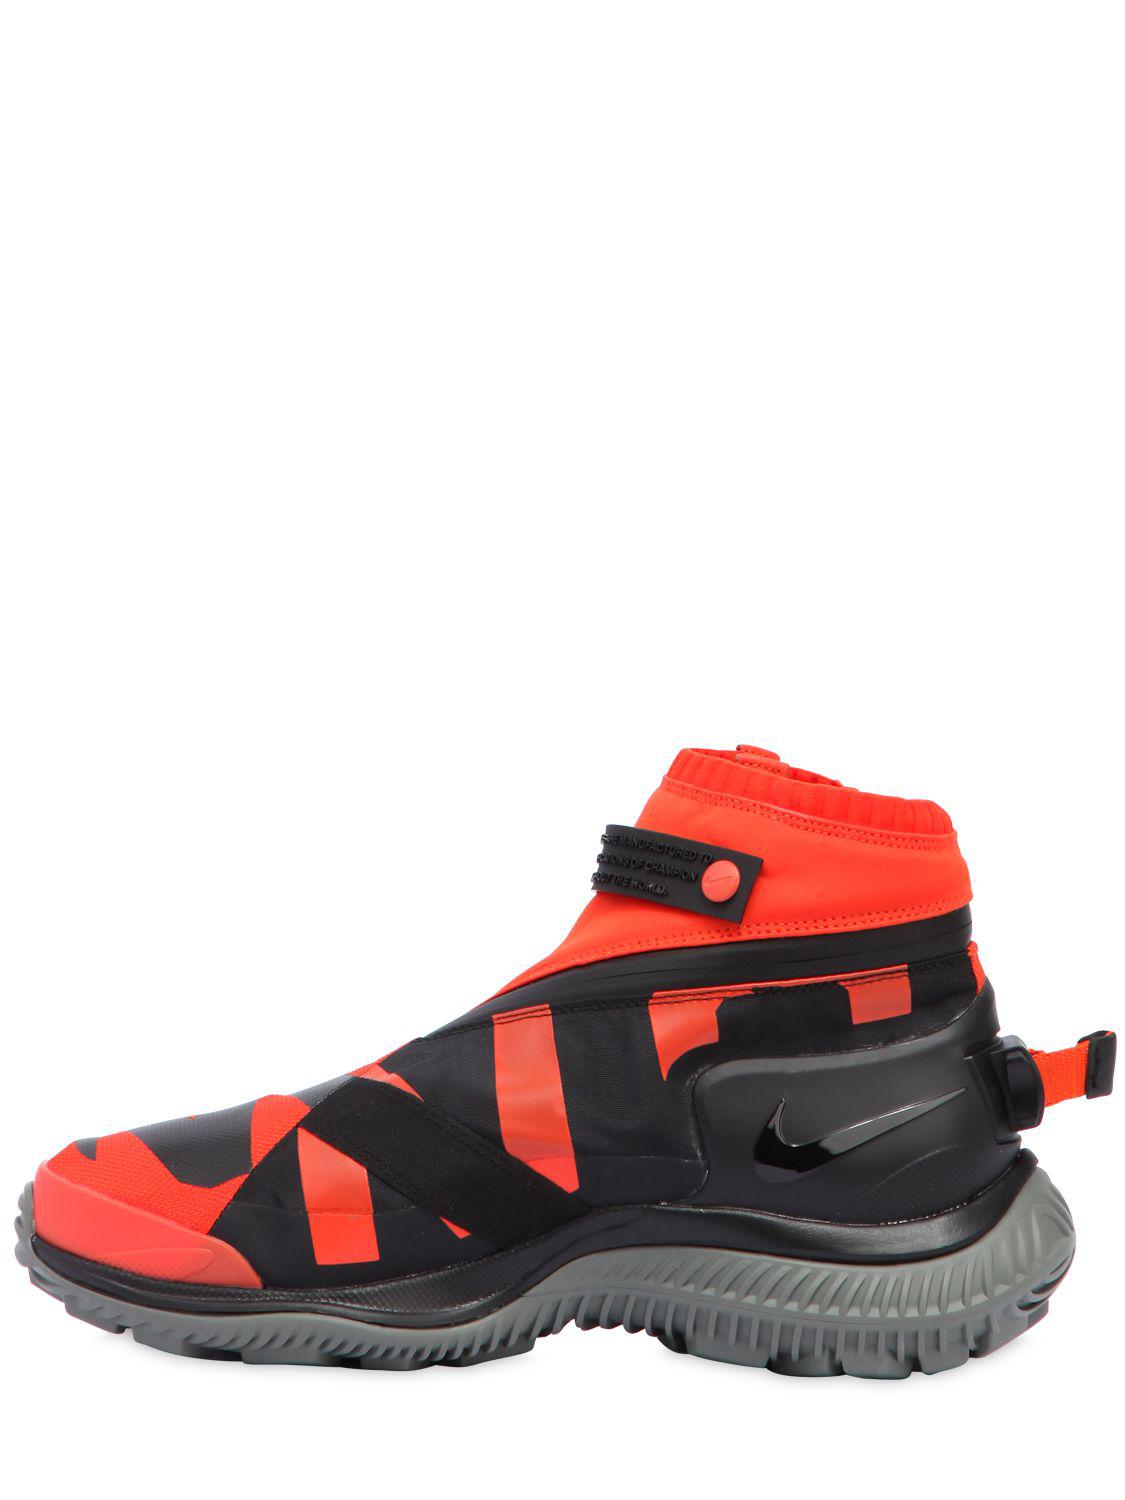 Lyst - Nike Acg.008.zpbt Waterproof Sneaker Boots in Red for Men